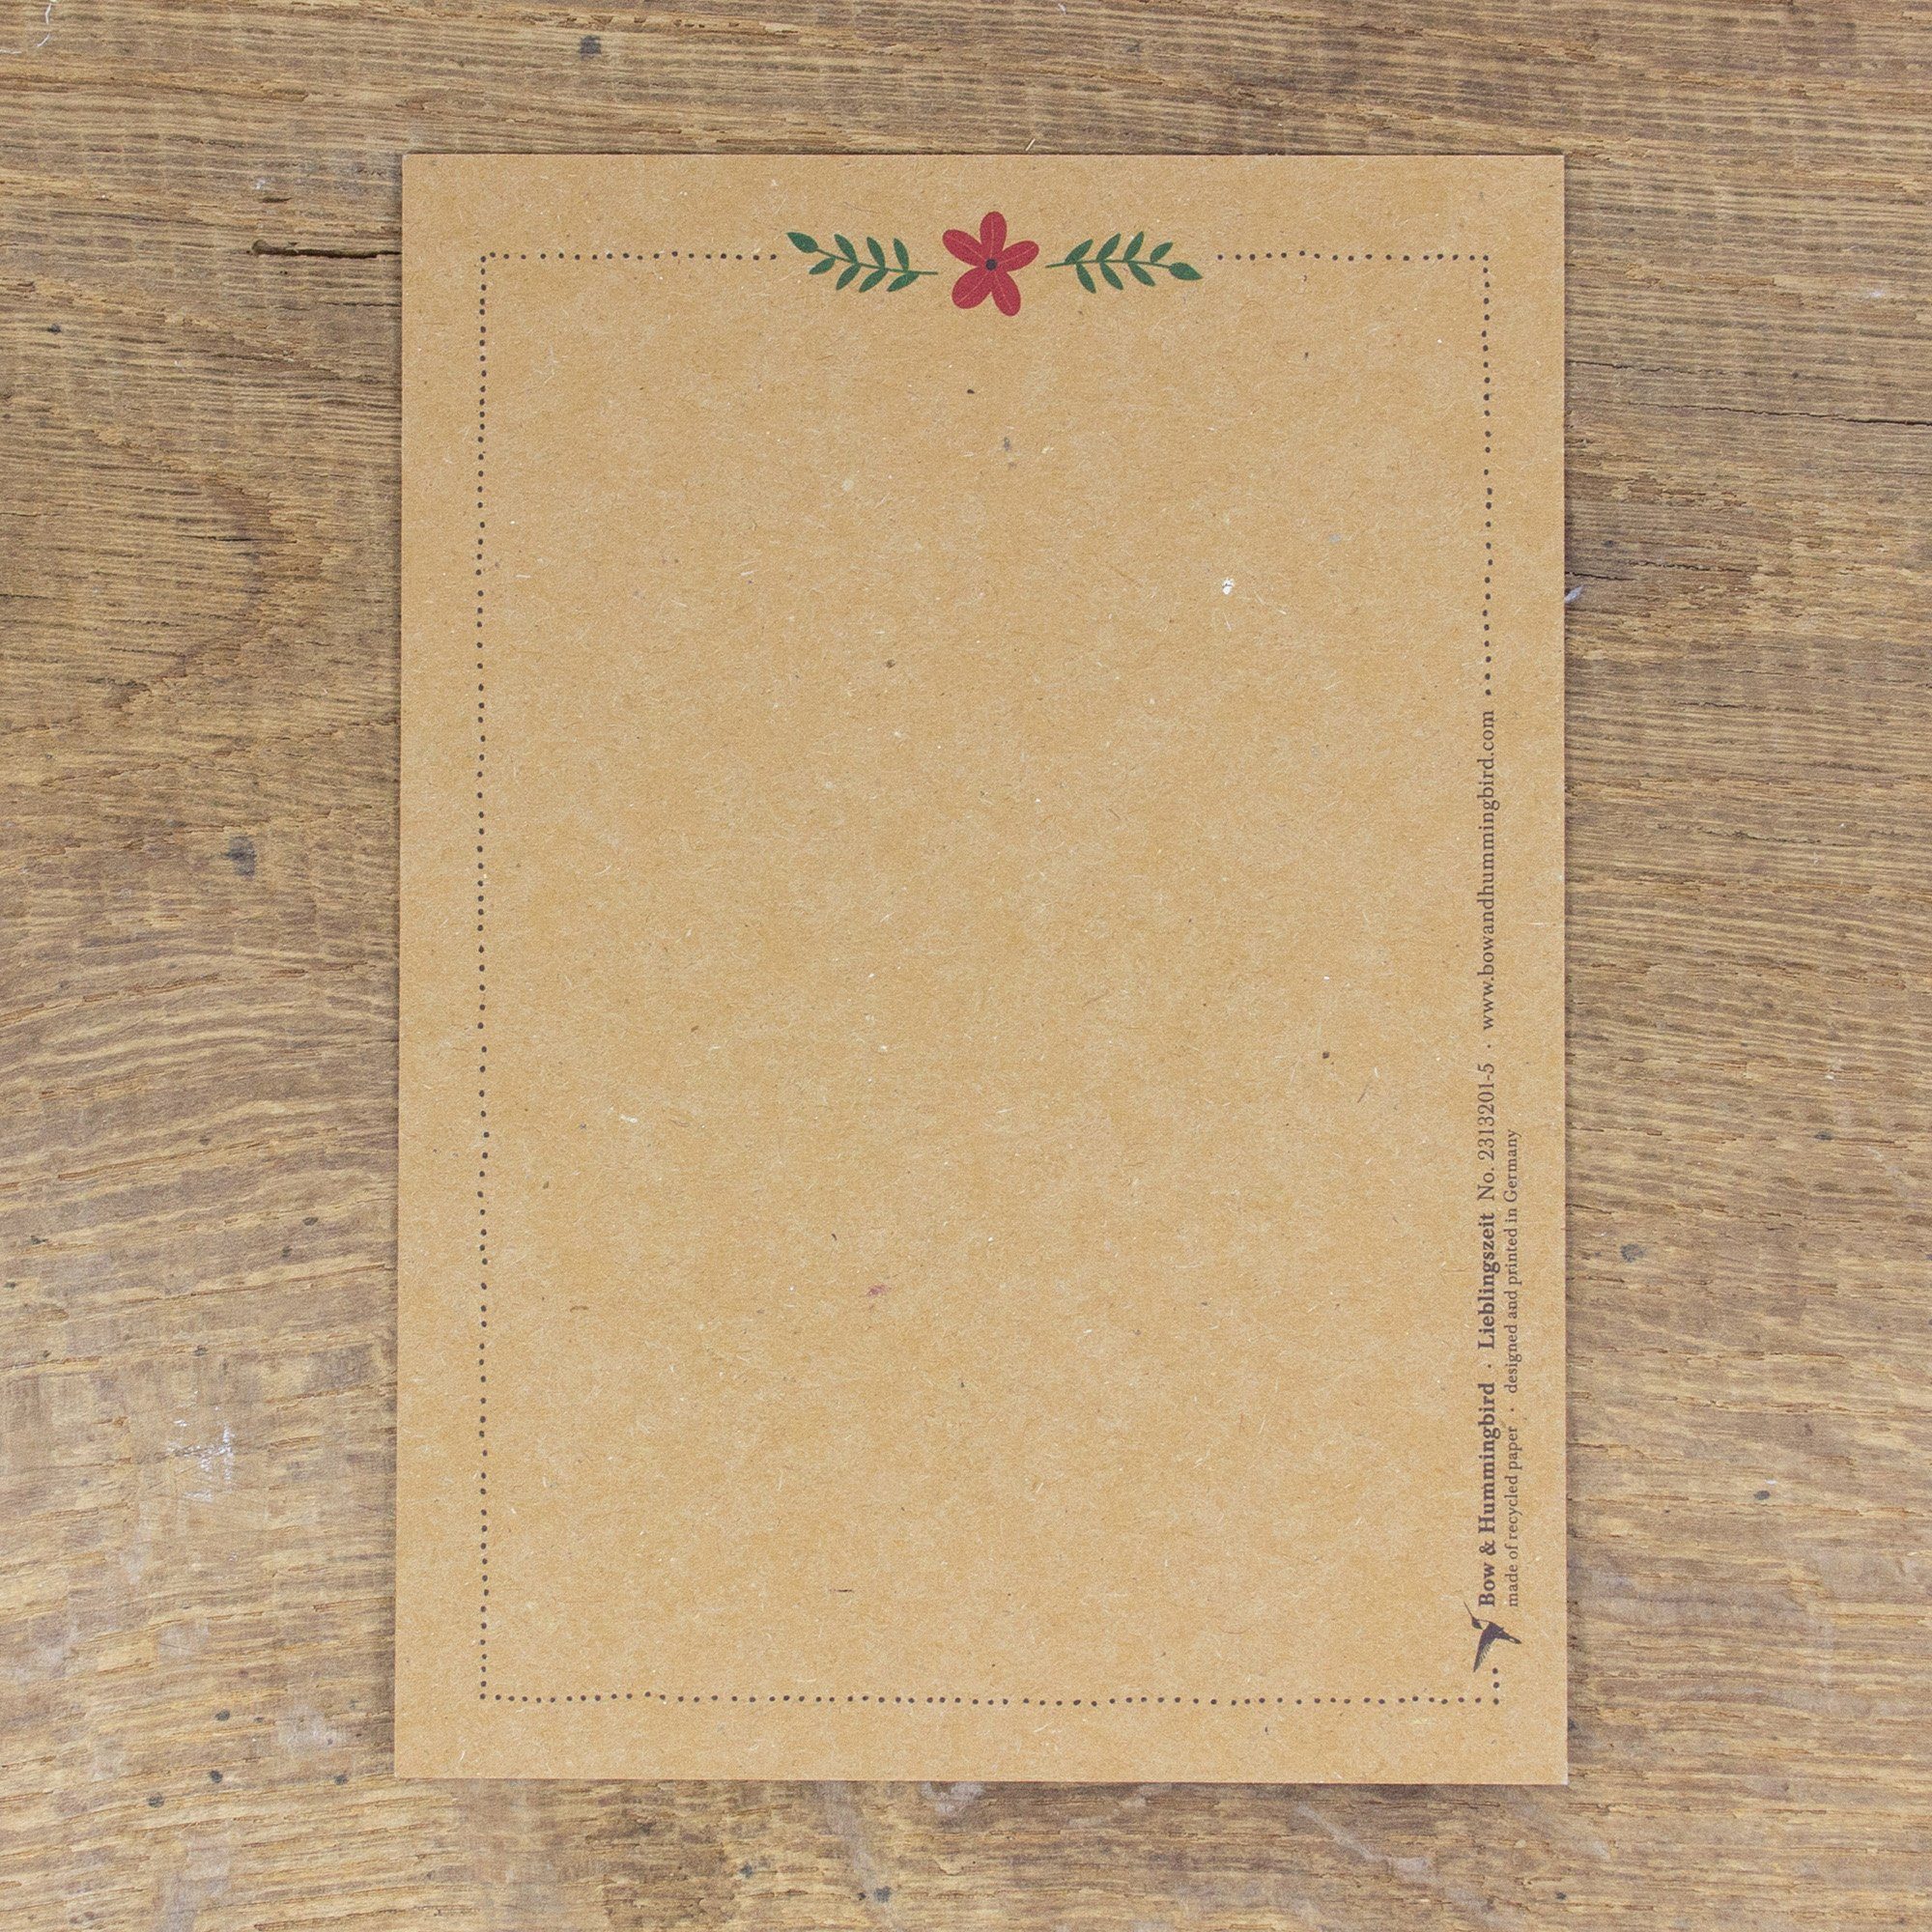 Postkarte Postkarte Hummingbird & Briefumschlag mit Lieblingszeit, Umschlag Bow ohne wahlweise